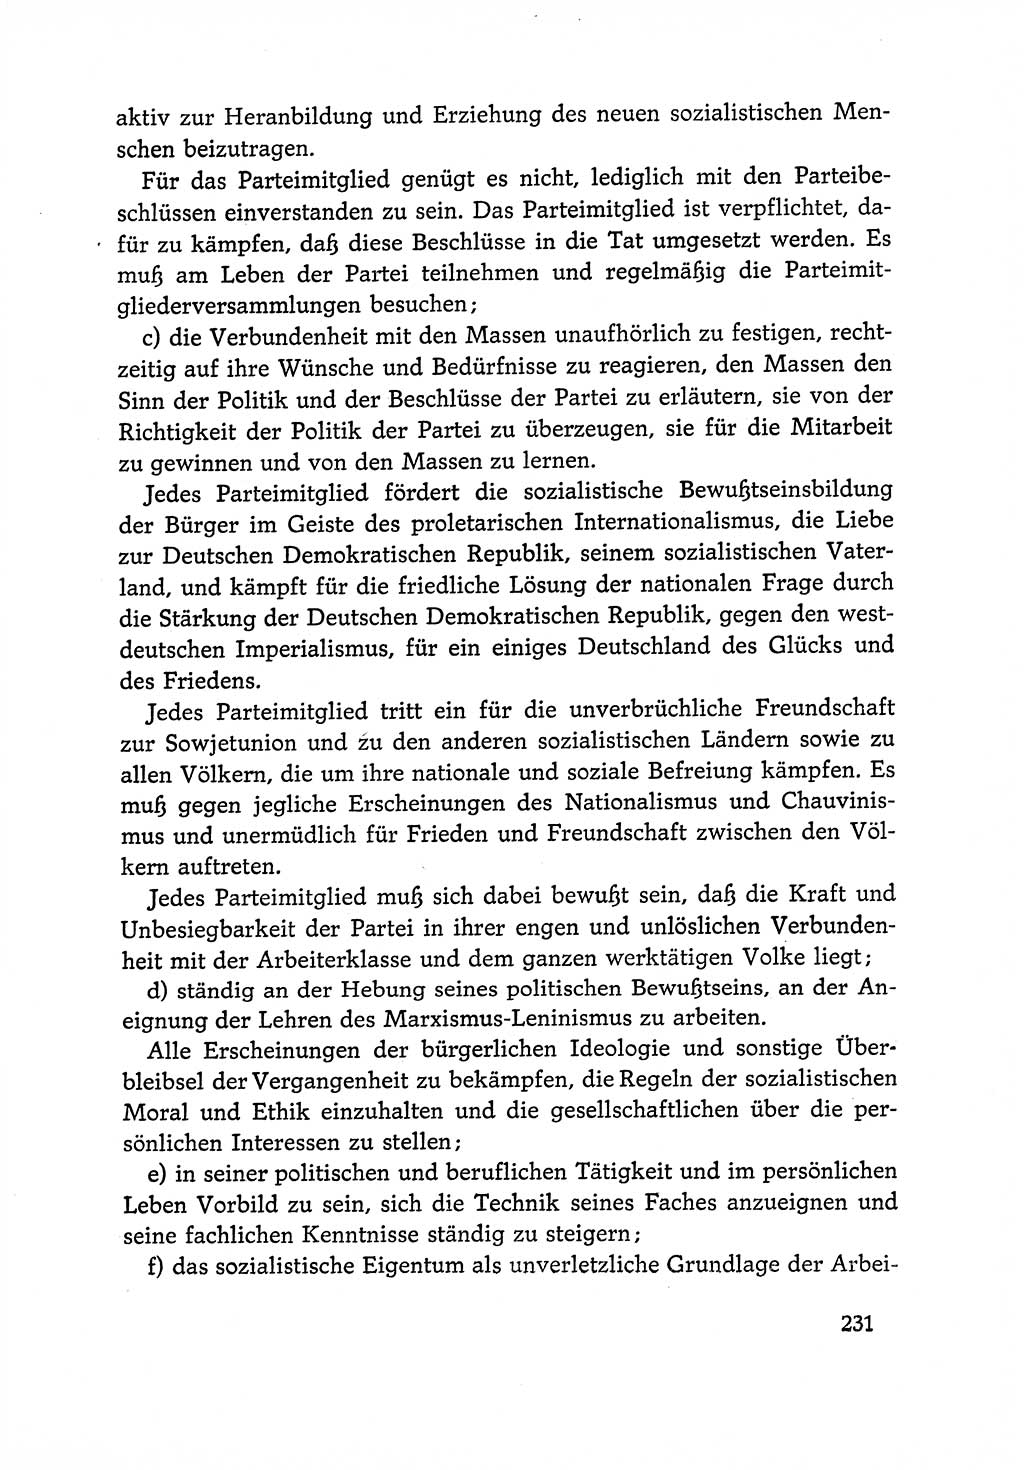 Dokumente der Sozialistischen Einheitspartei Deutschlands (SED) [Deutsche Demokratische Republik (DDR)] 1966-1967, Seite 231 (Dok. SED DDR 1966-1967, S. 231)